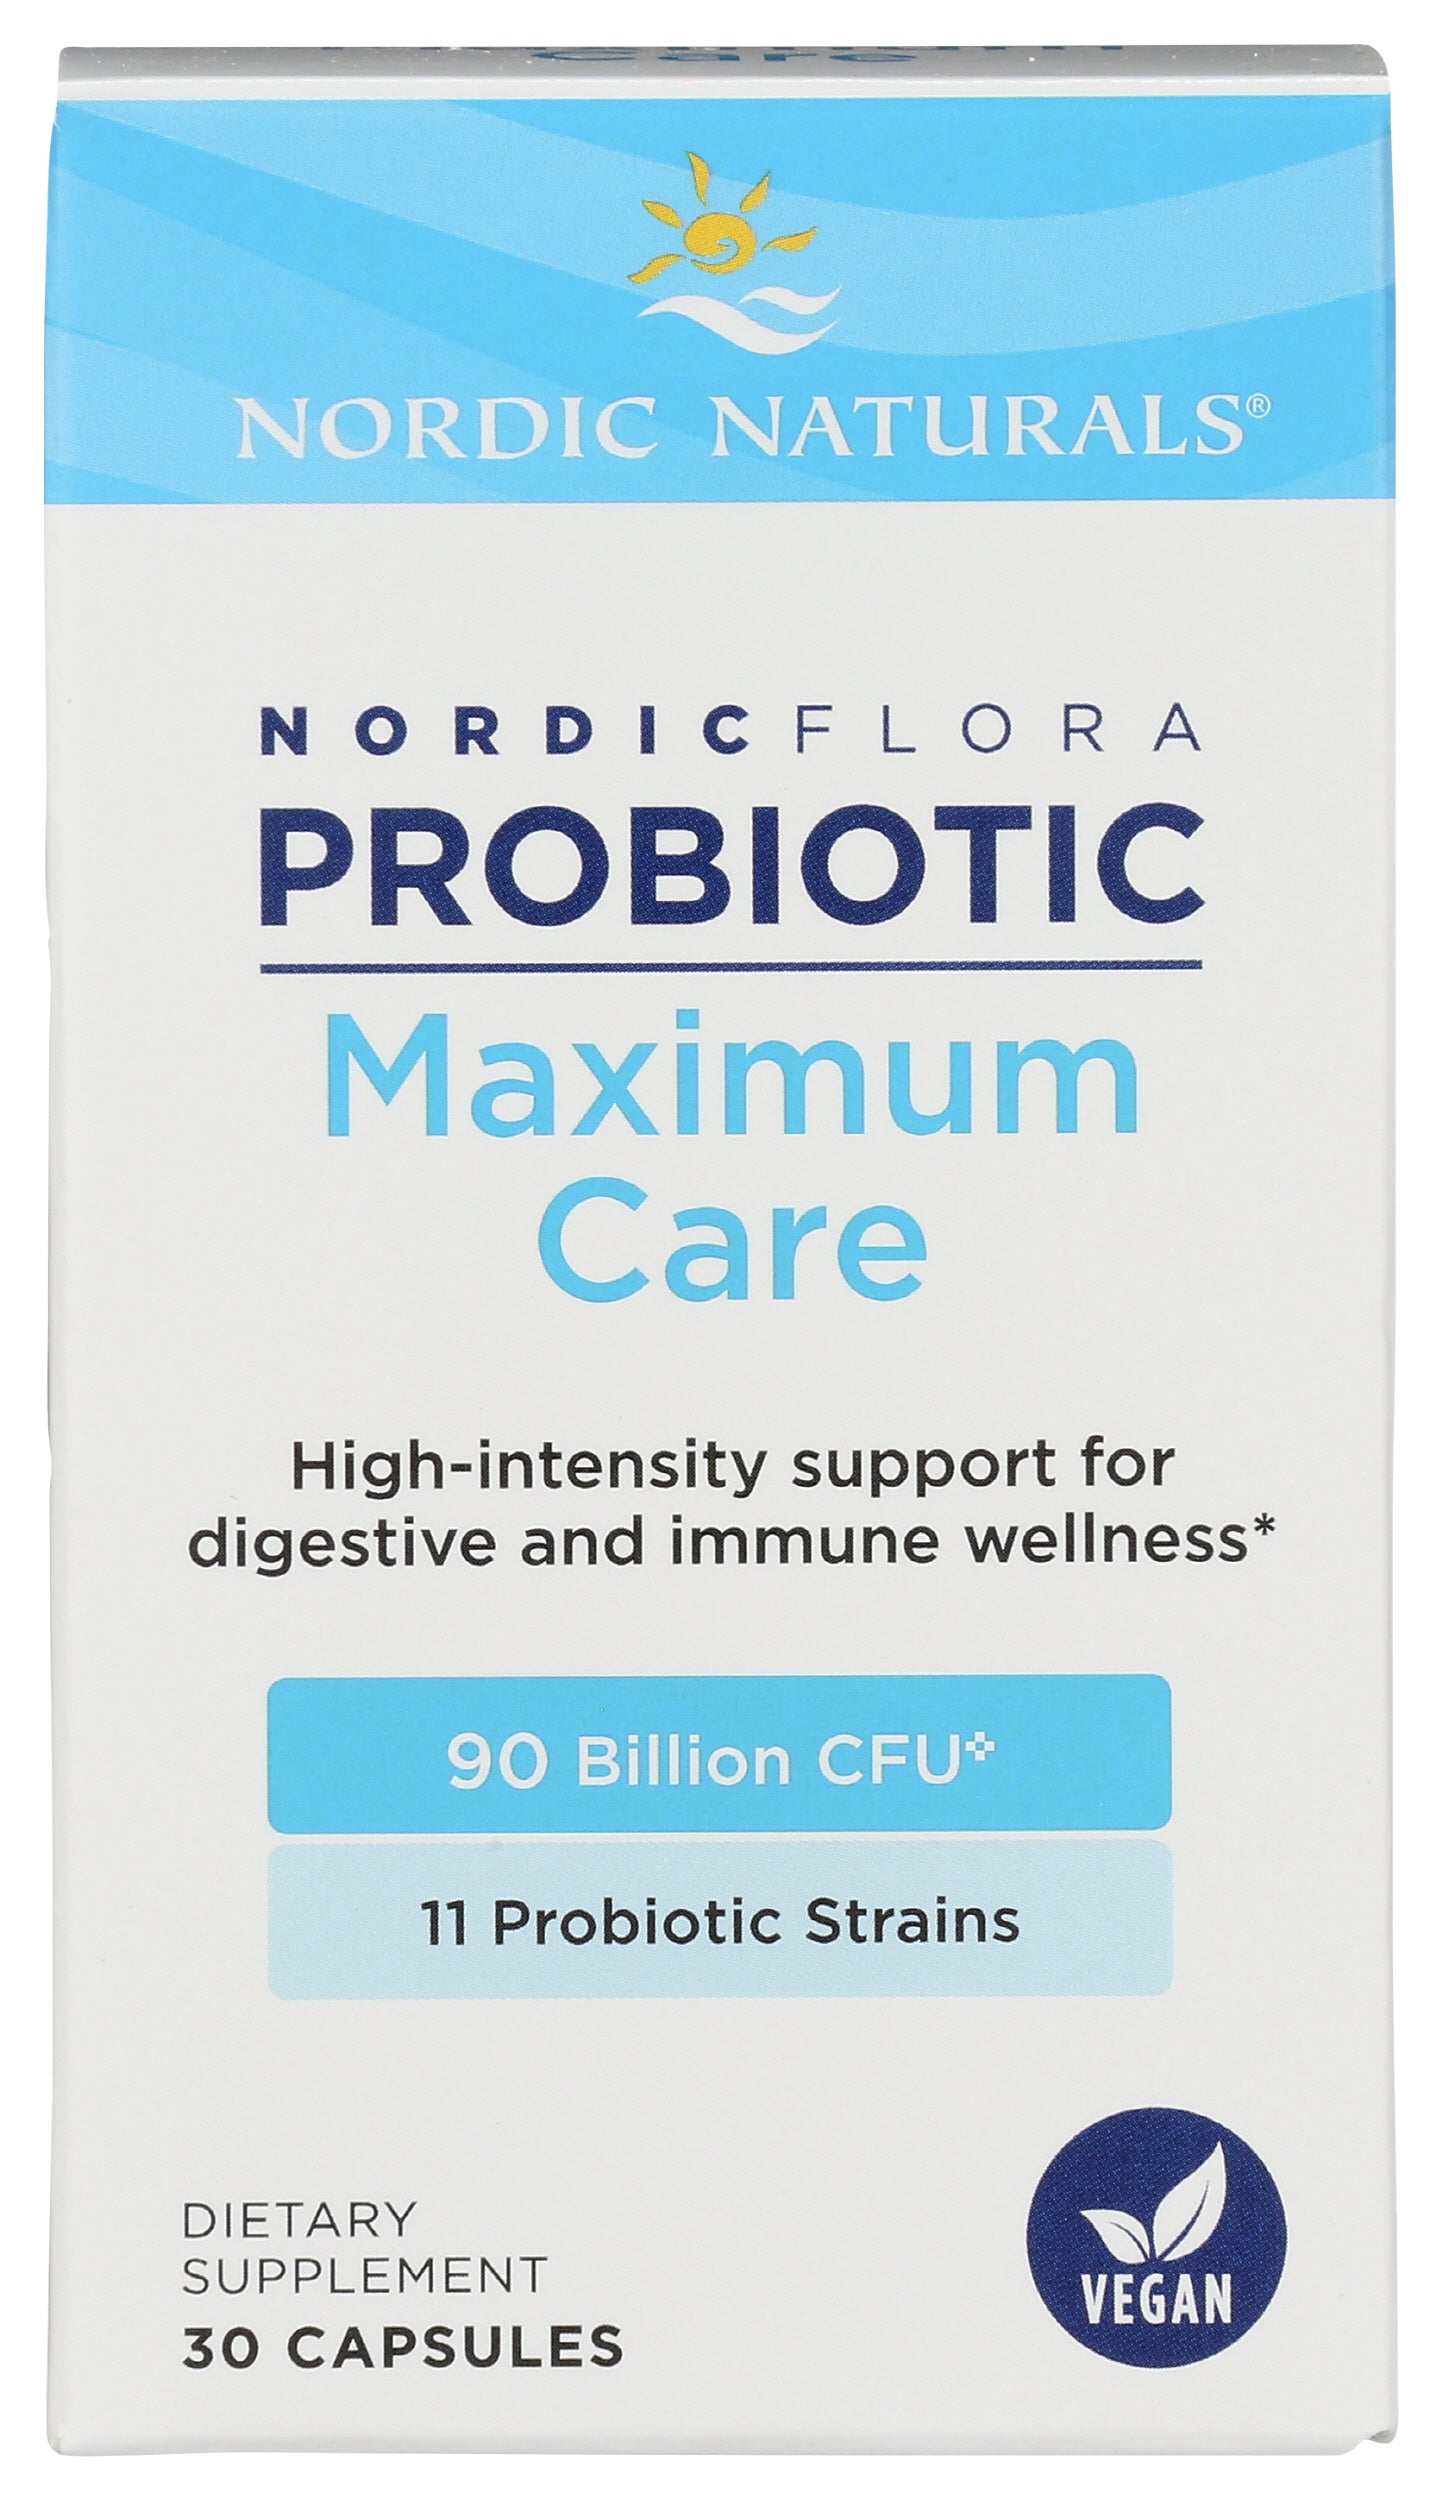 Nordic Naturals Flora Probiotic Maximum Care Front of Box